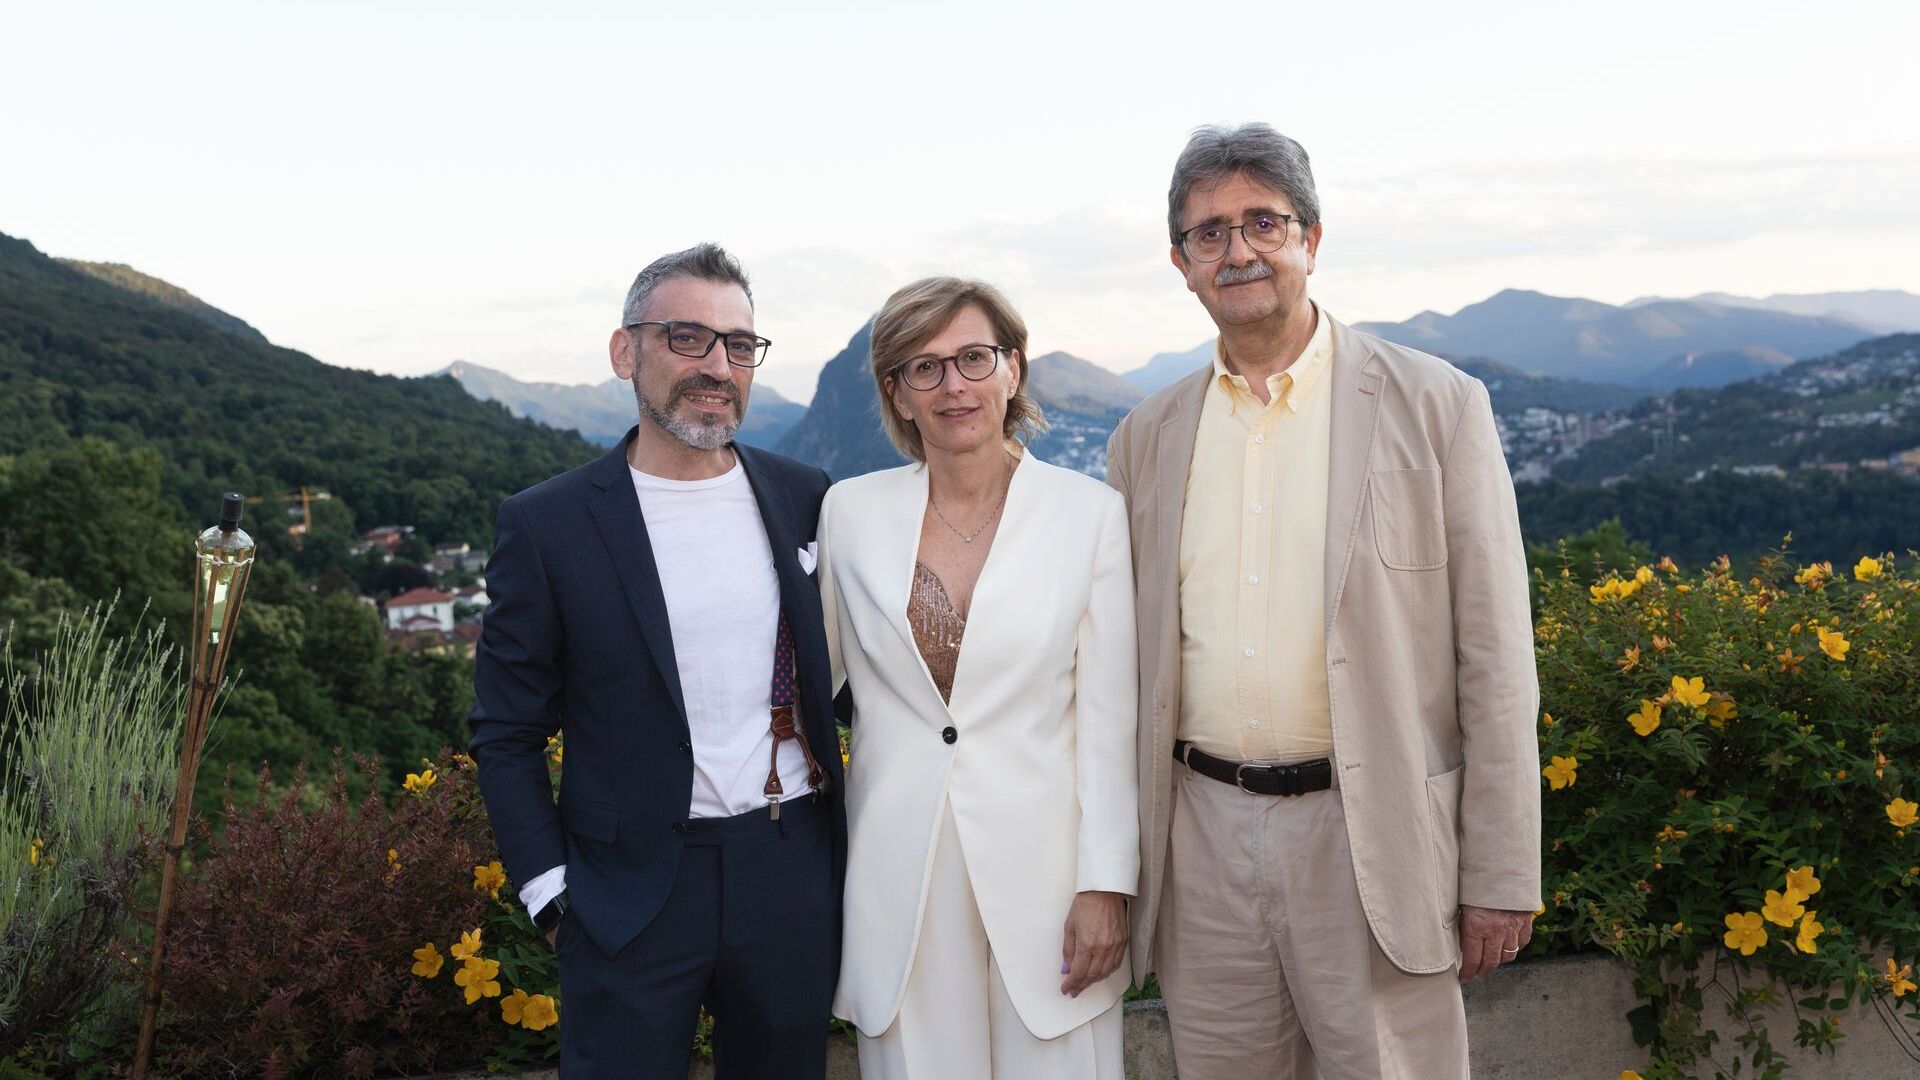 Luca Mauriello og Cristina Giotto, henholdsvis Vice President og President for ated-ICT Ticino, med partner Silvano Marioni